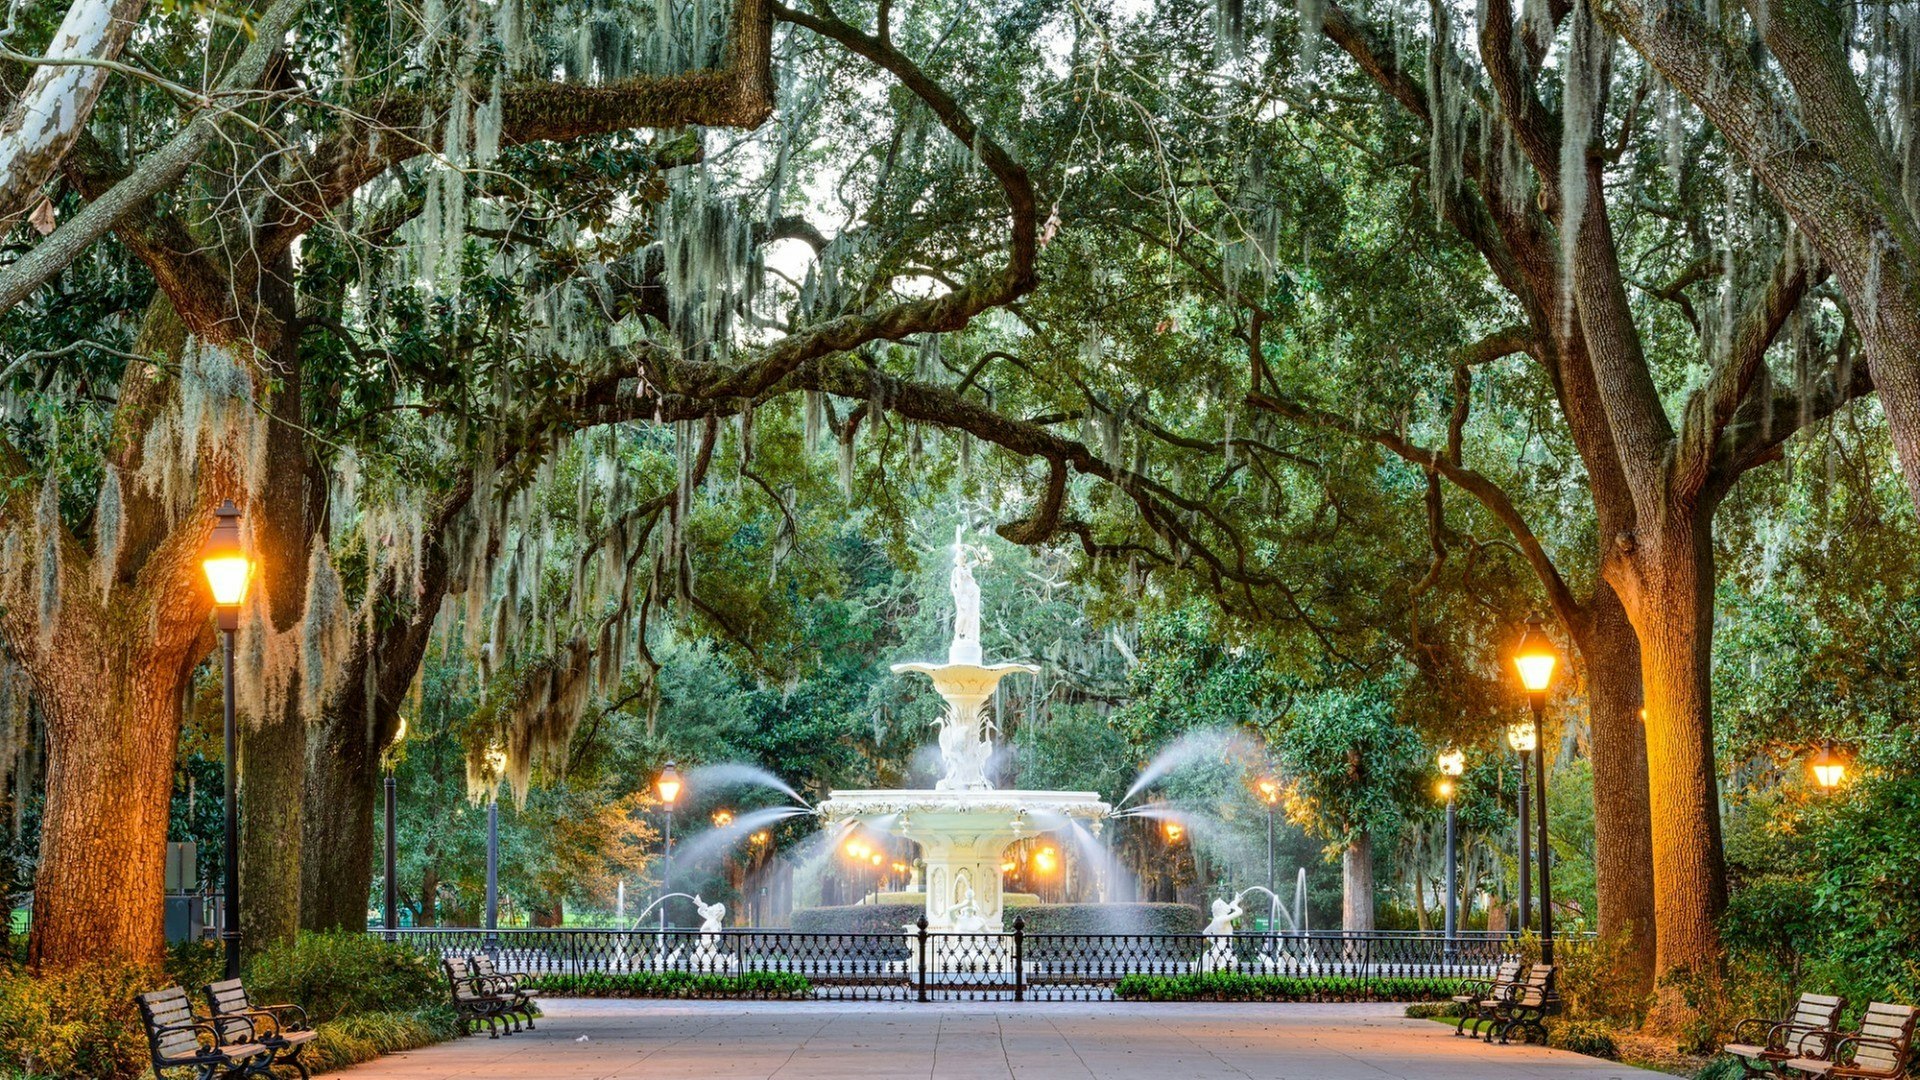 Savannah, Georgia, USA at Forsyth Park Fountain